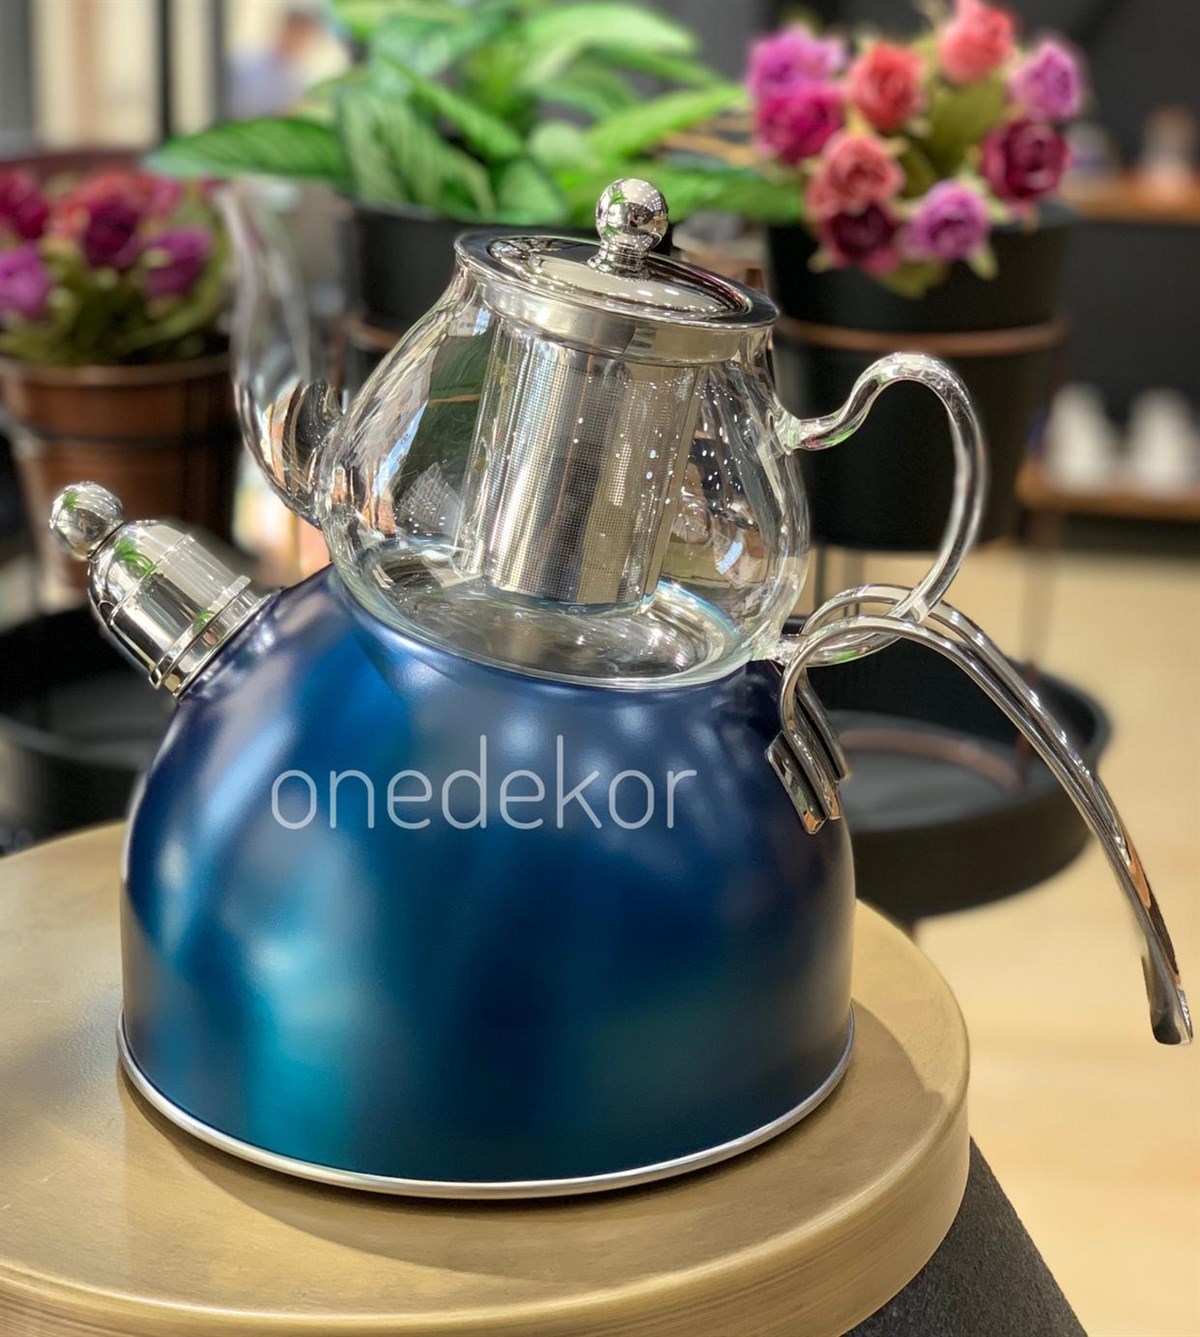 Düdüklü Çelik Çaydanlık Renkli | Onedekor.com